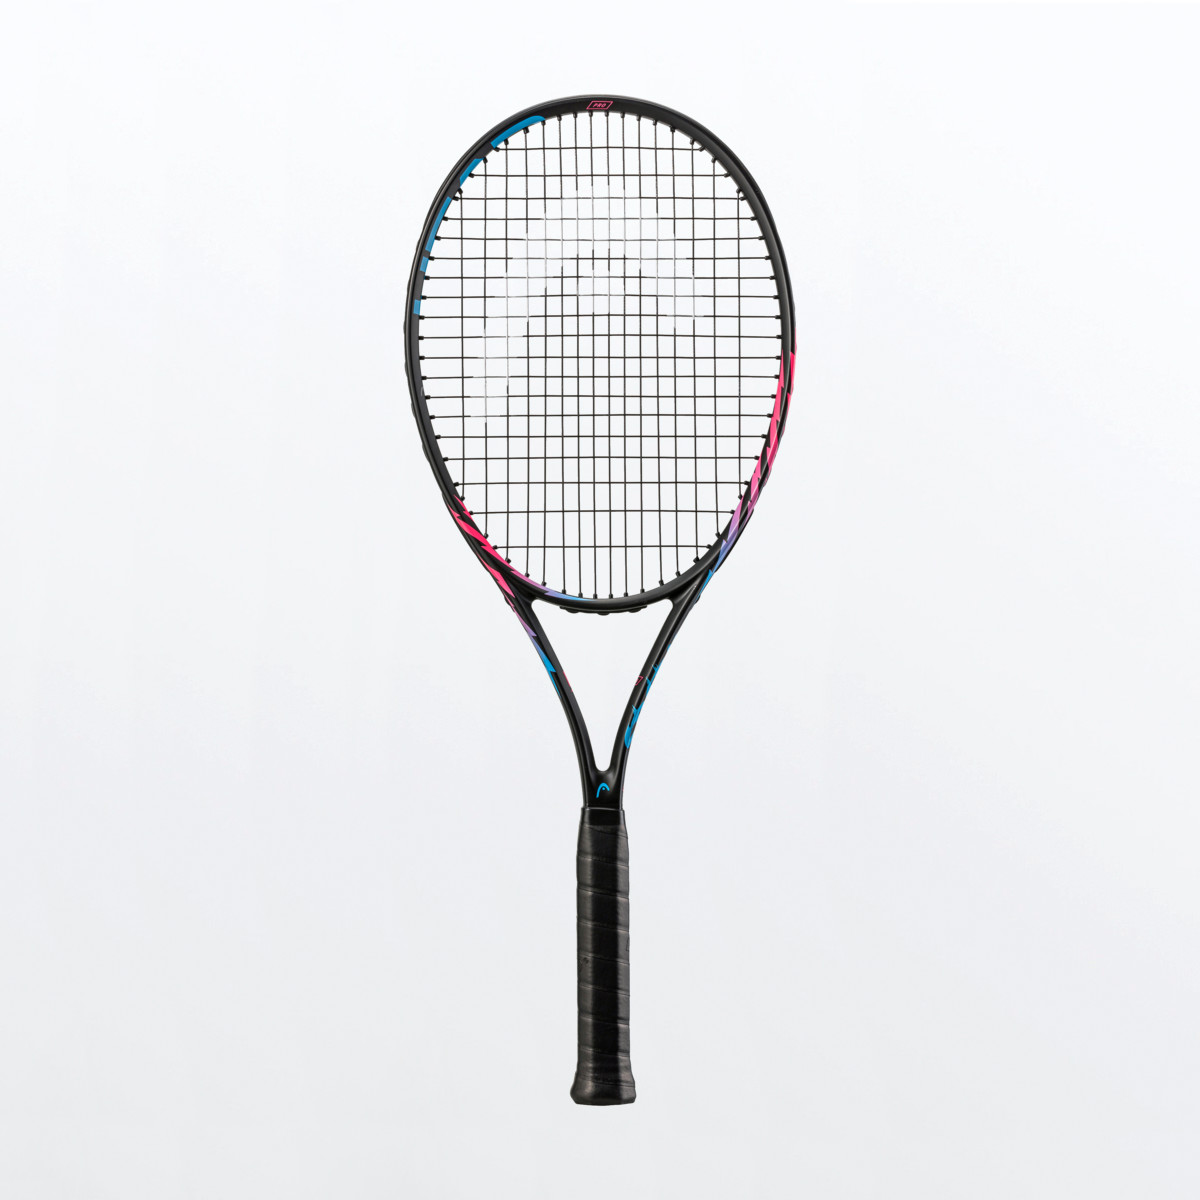 Head MX Spark Pro Tennis Racket